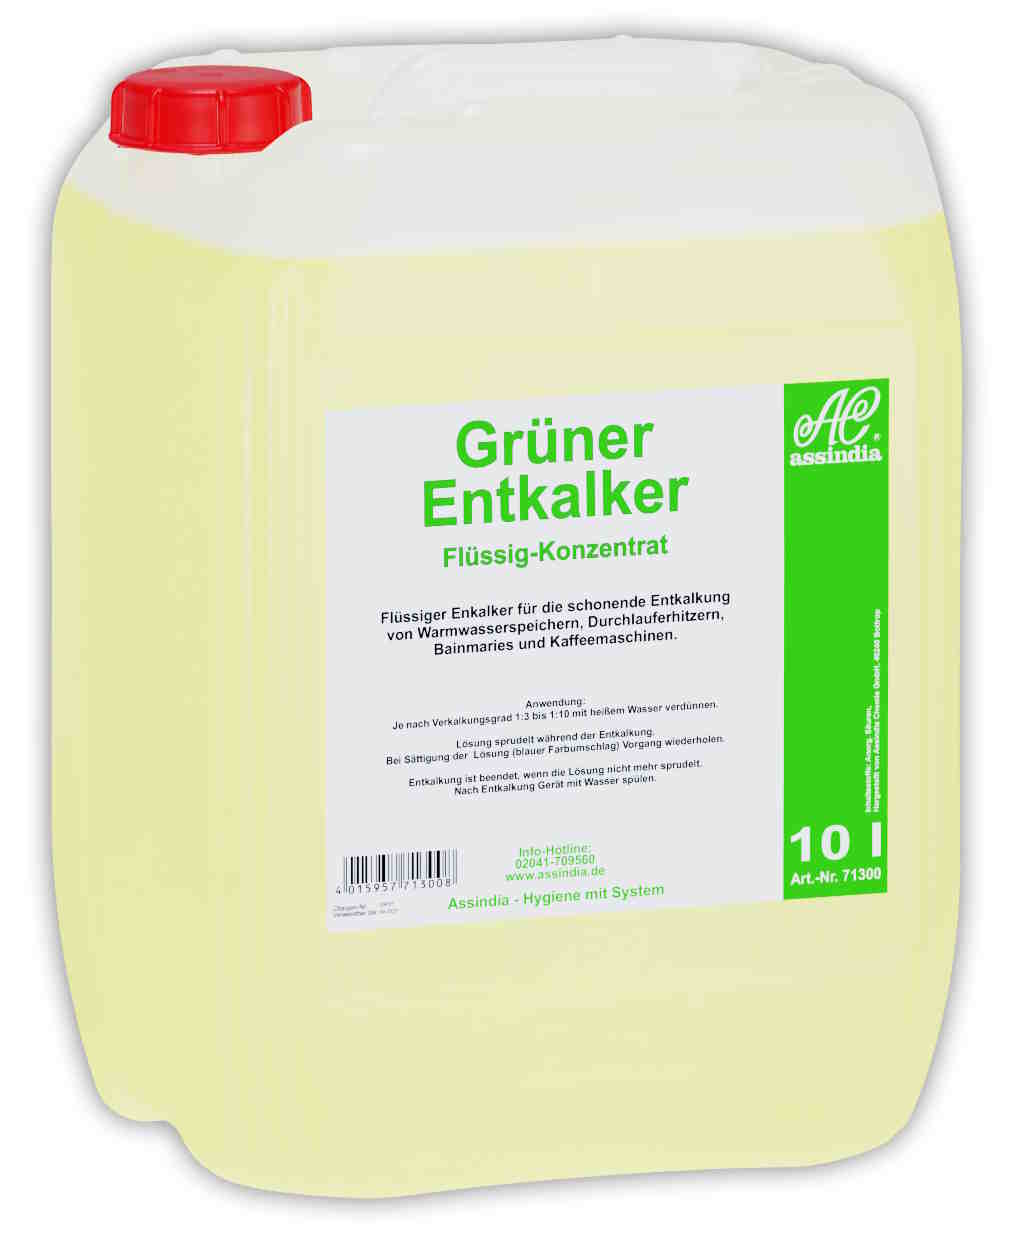 Grüner Entkalker flüssiges Konzentrat | 10 Liter Kanister